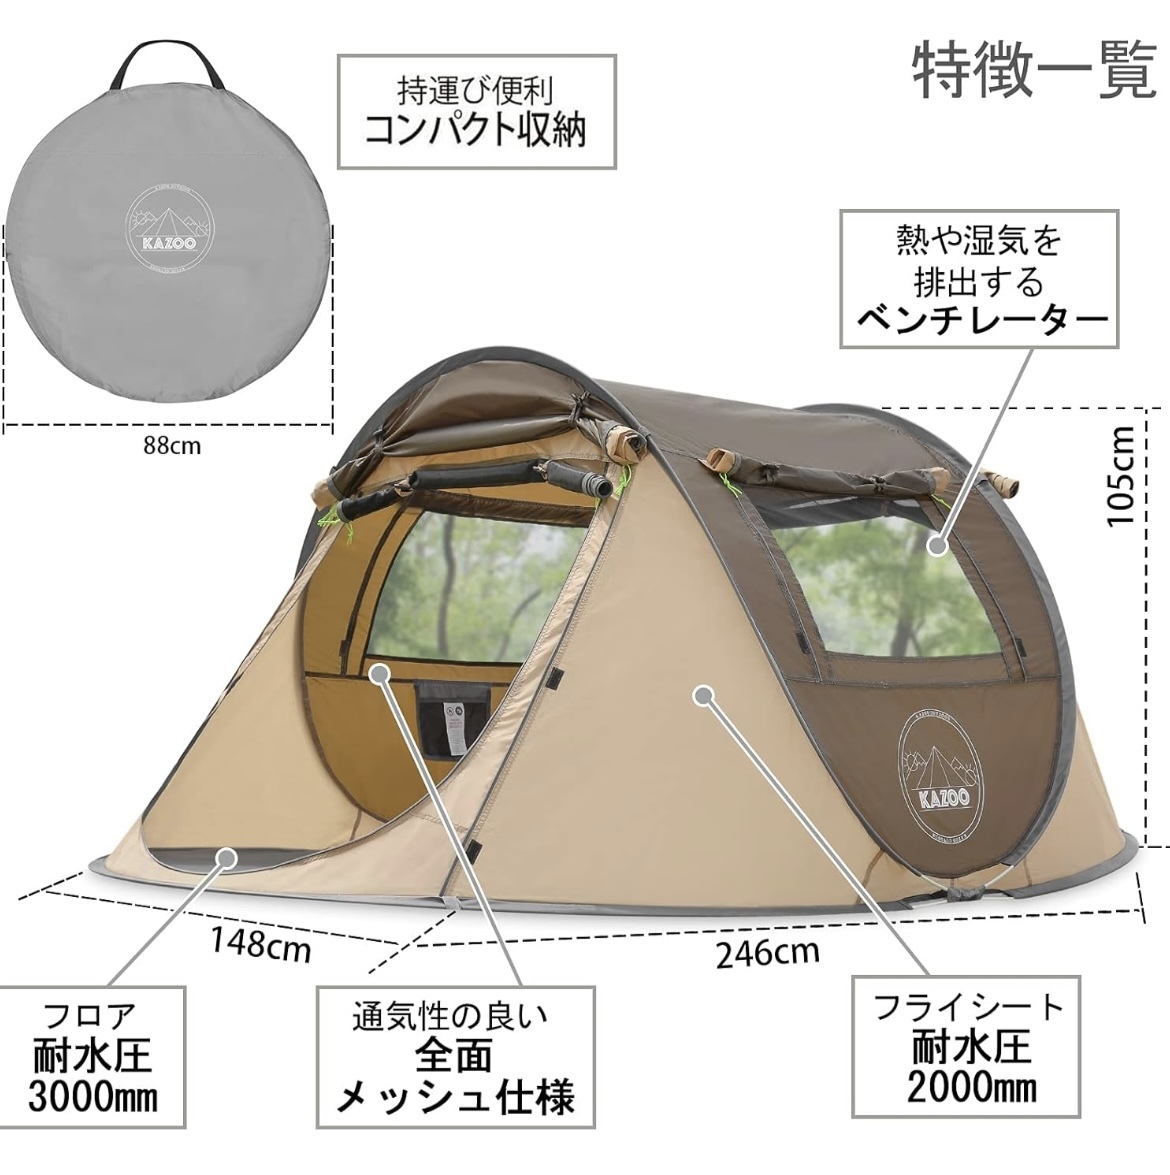 キャンプ用自動屋外ポップアップテント防水用クイックオープニングテントキャリングバッグ付き4人用キャノピーの画像2